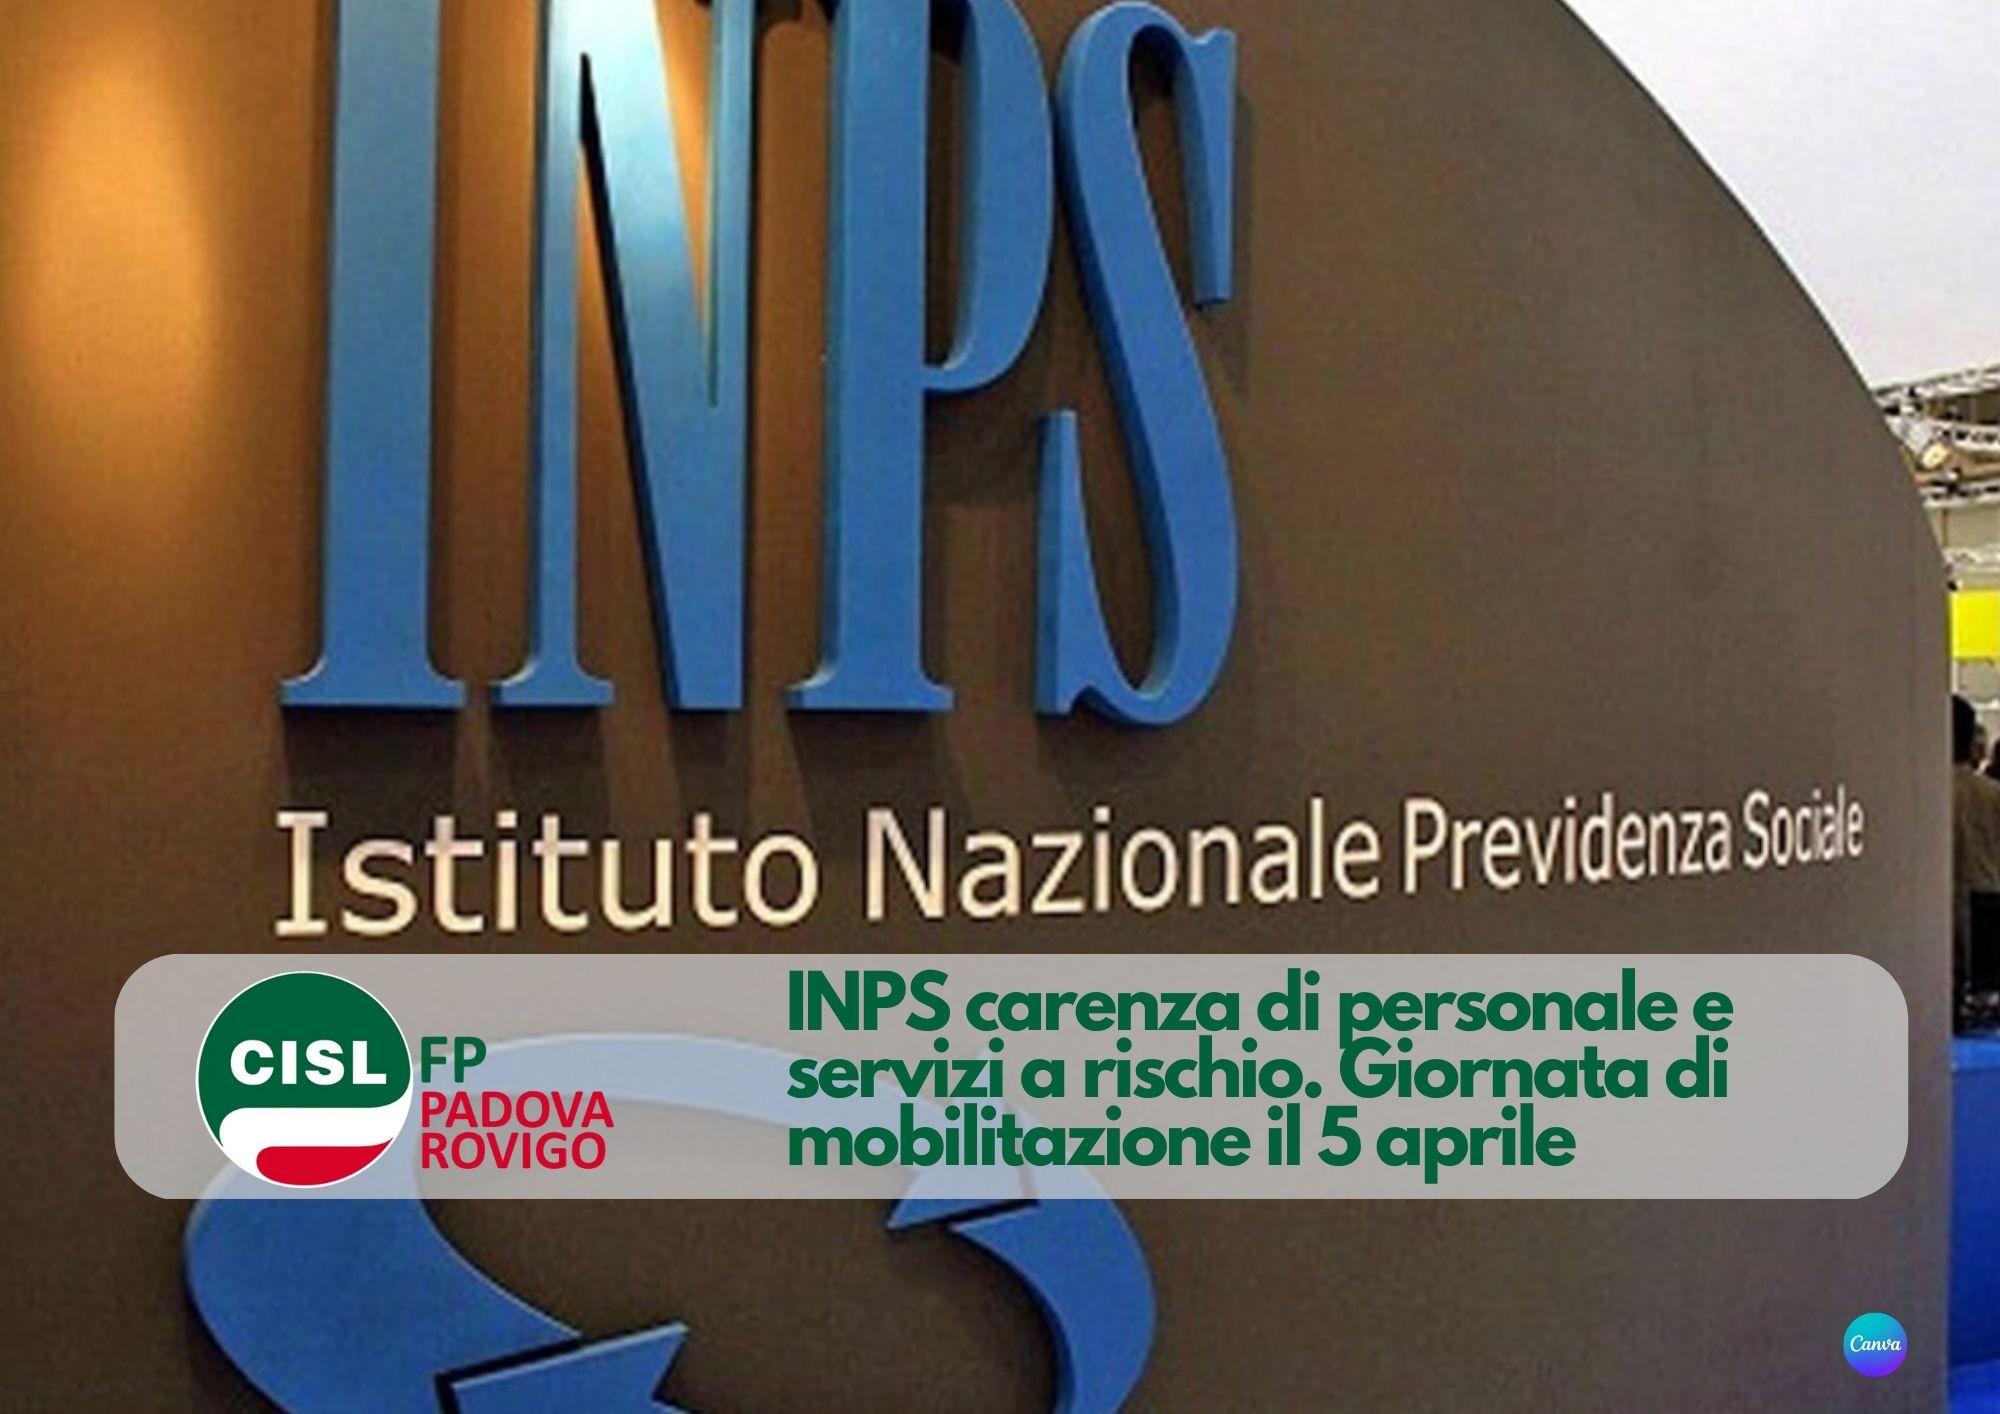 CISL FP Padova Rovigo. INPS carenza di personale e servizi a rischio. il 5 aprile giornata di mobilitazione in Veneto